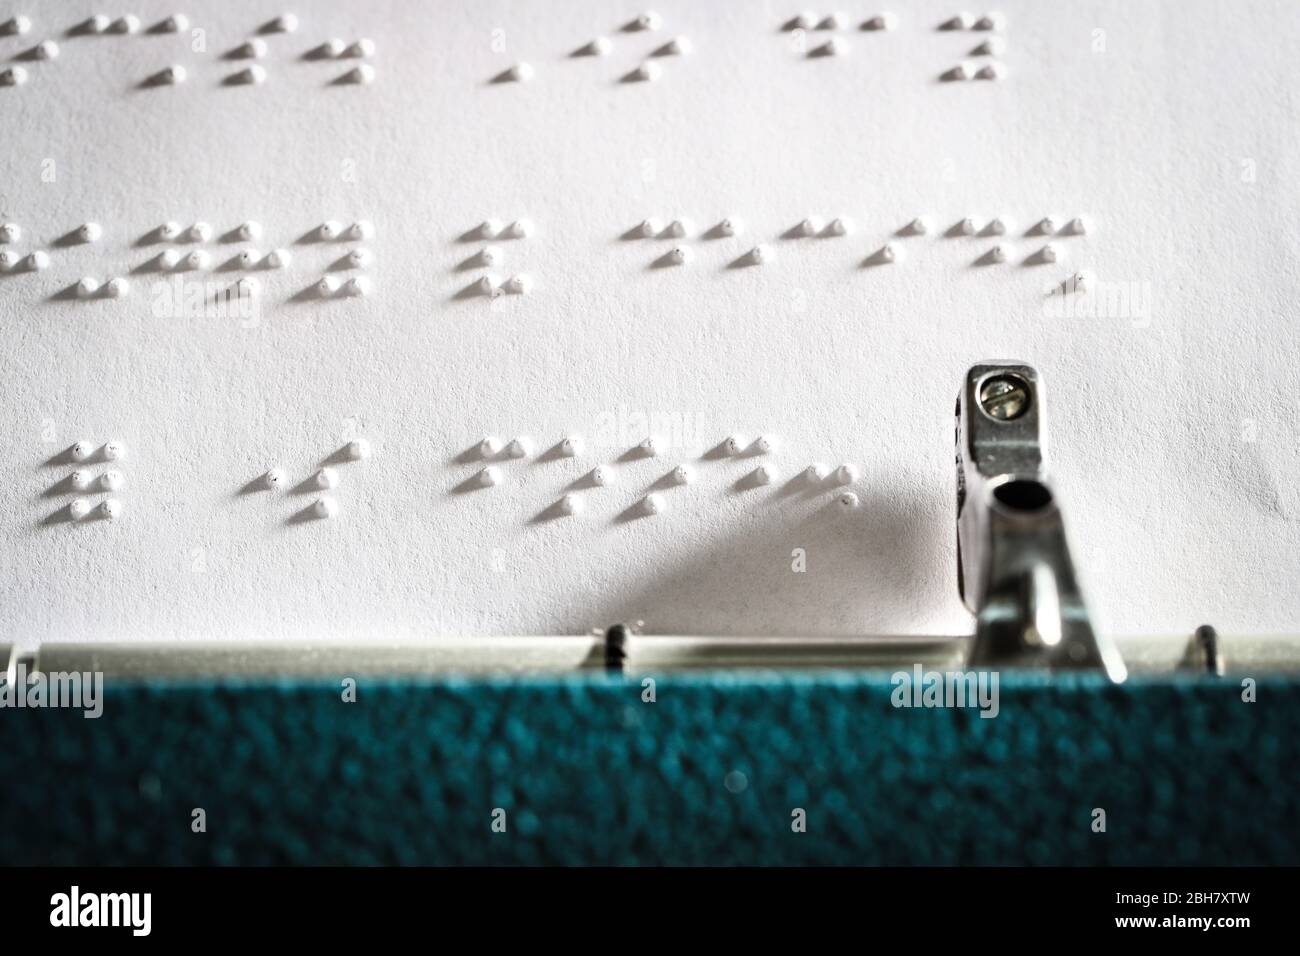 Braille imprimé à l'aide d'une machine à écrire à brailler Banque D'Images